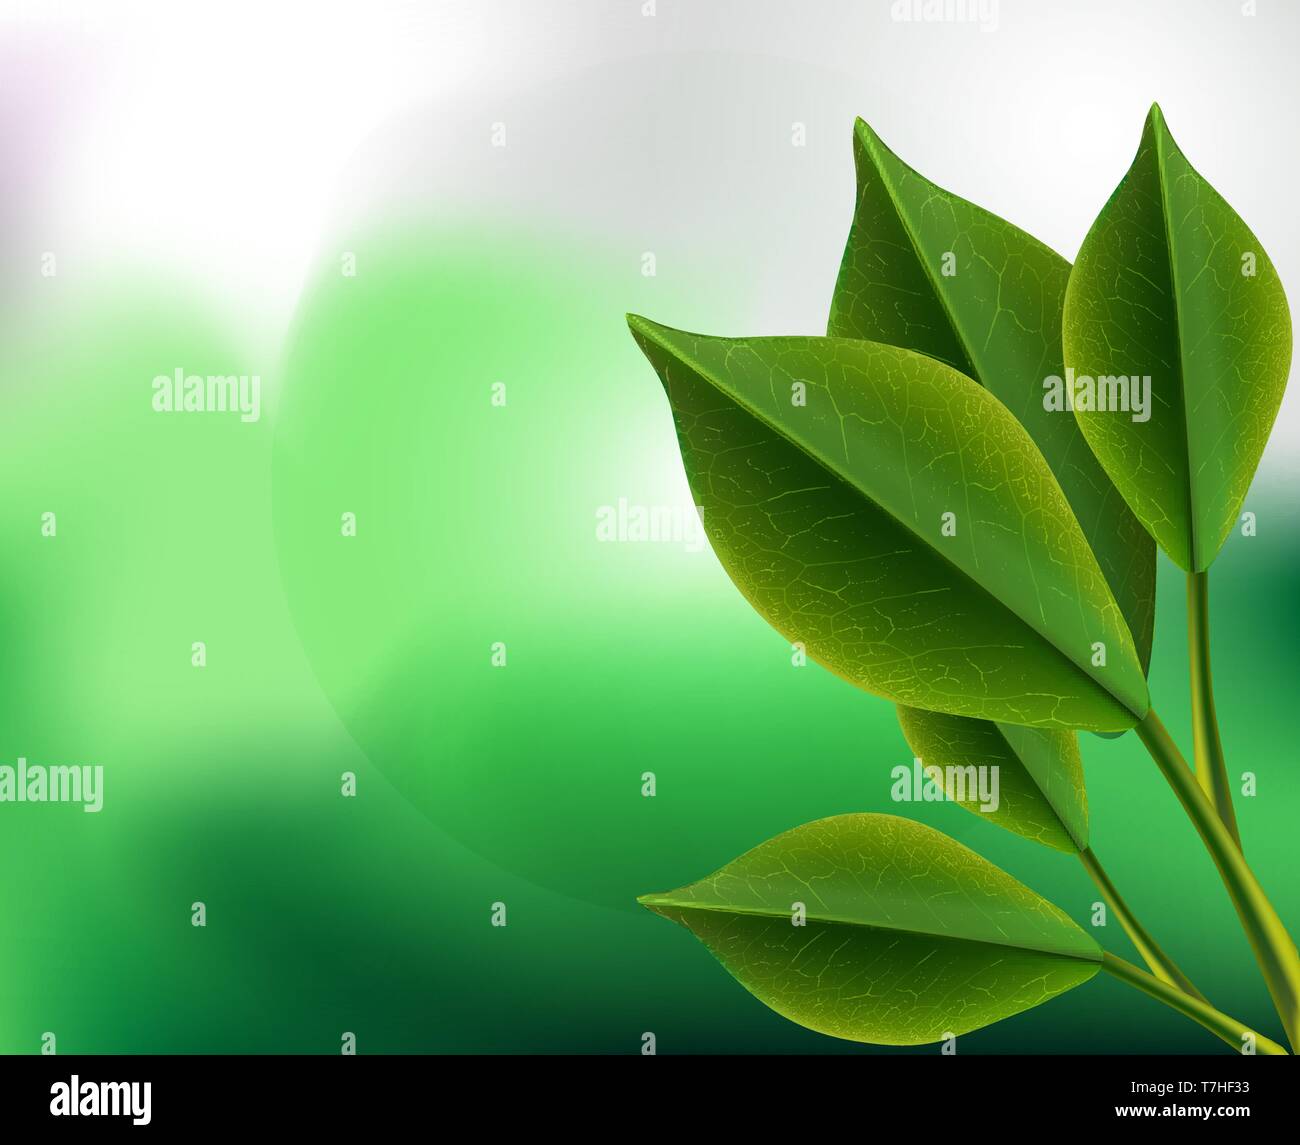 Nền tảng vector lá trà xanh chân thực 3D (Realistic 3d tea green leaves vector background): Bạn đam mê thiết kế và yêu thích tự nhiên? Bộ sưu tập nền tảng vector lá trà xanh chân thực 3D sẽ làm bạn hài lòng với những hình ảnh đầy chi tiết, chân thực và sống động. Bạn sẽ cảm nhận được sự tự do và thoải mái khi sáng tạo với những lá cây xanh mát trong thiết kế của mình.